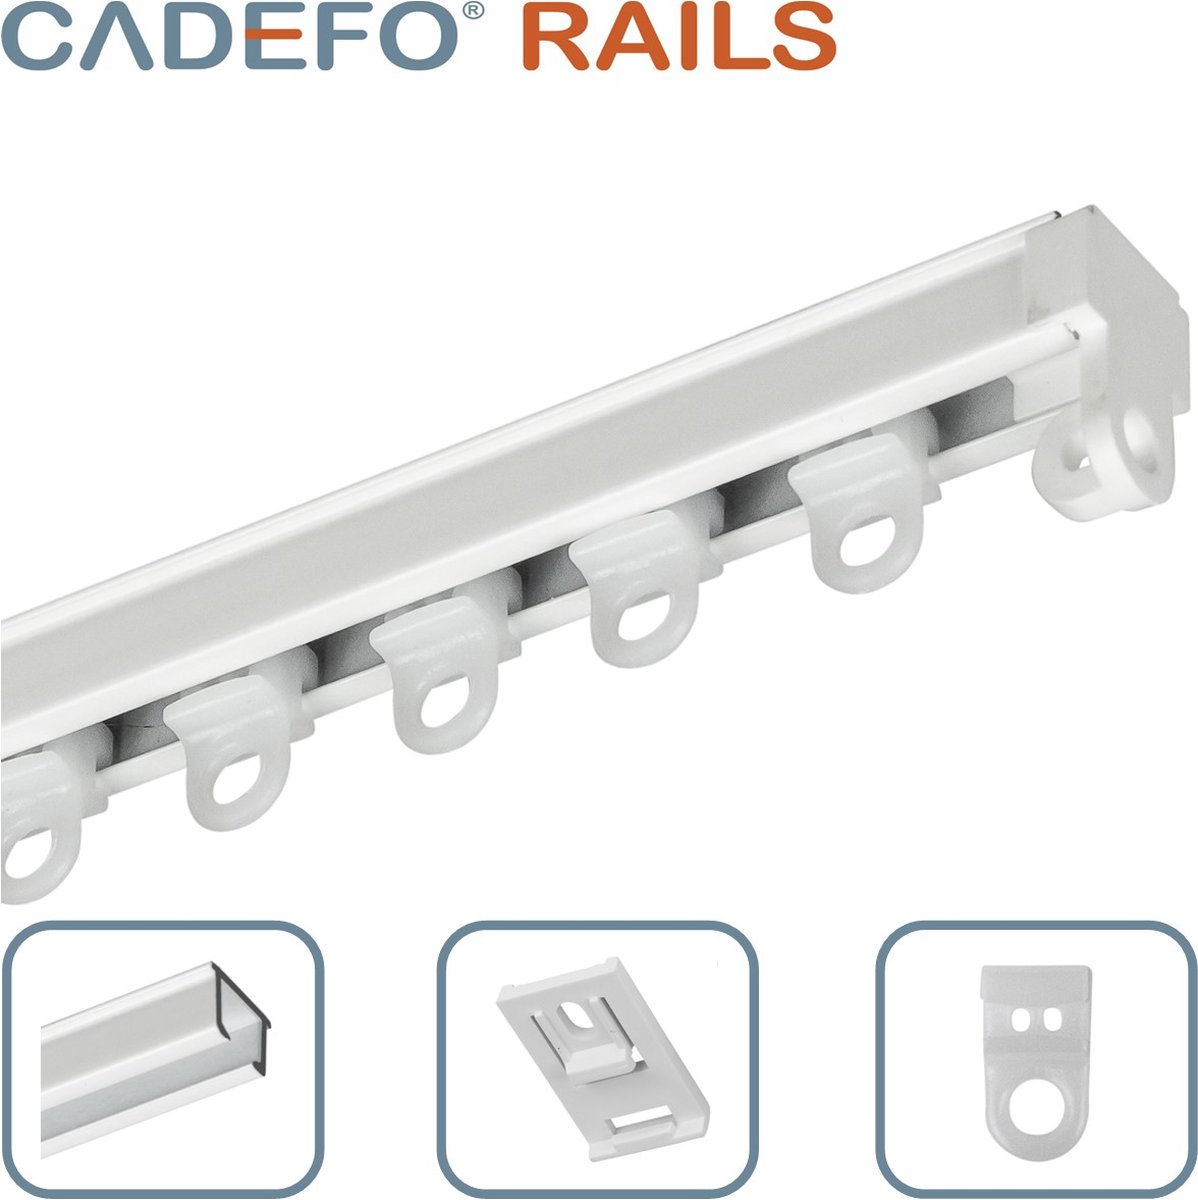 CADEFO RAILS (301 - 350 cm) Gordijnrails - Compleet op maat! - UIT 1 STUK - Leverbaar tot 6 meter - Plafondbevestiging - Lengte 322 cm